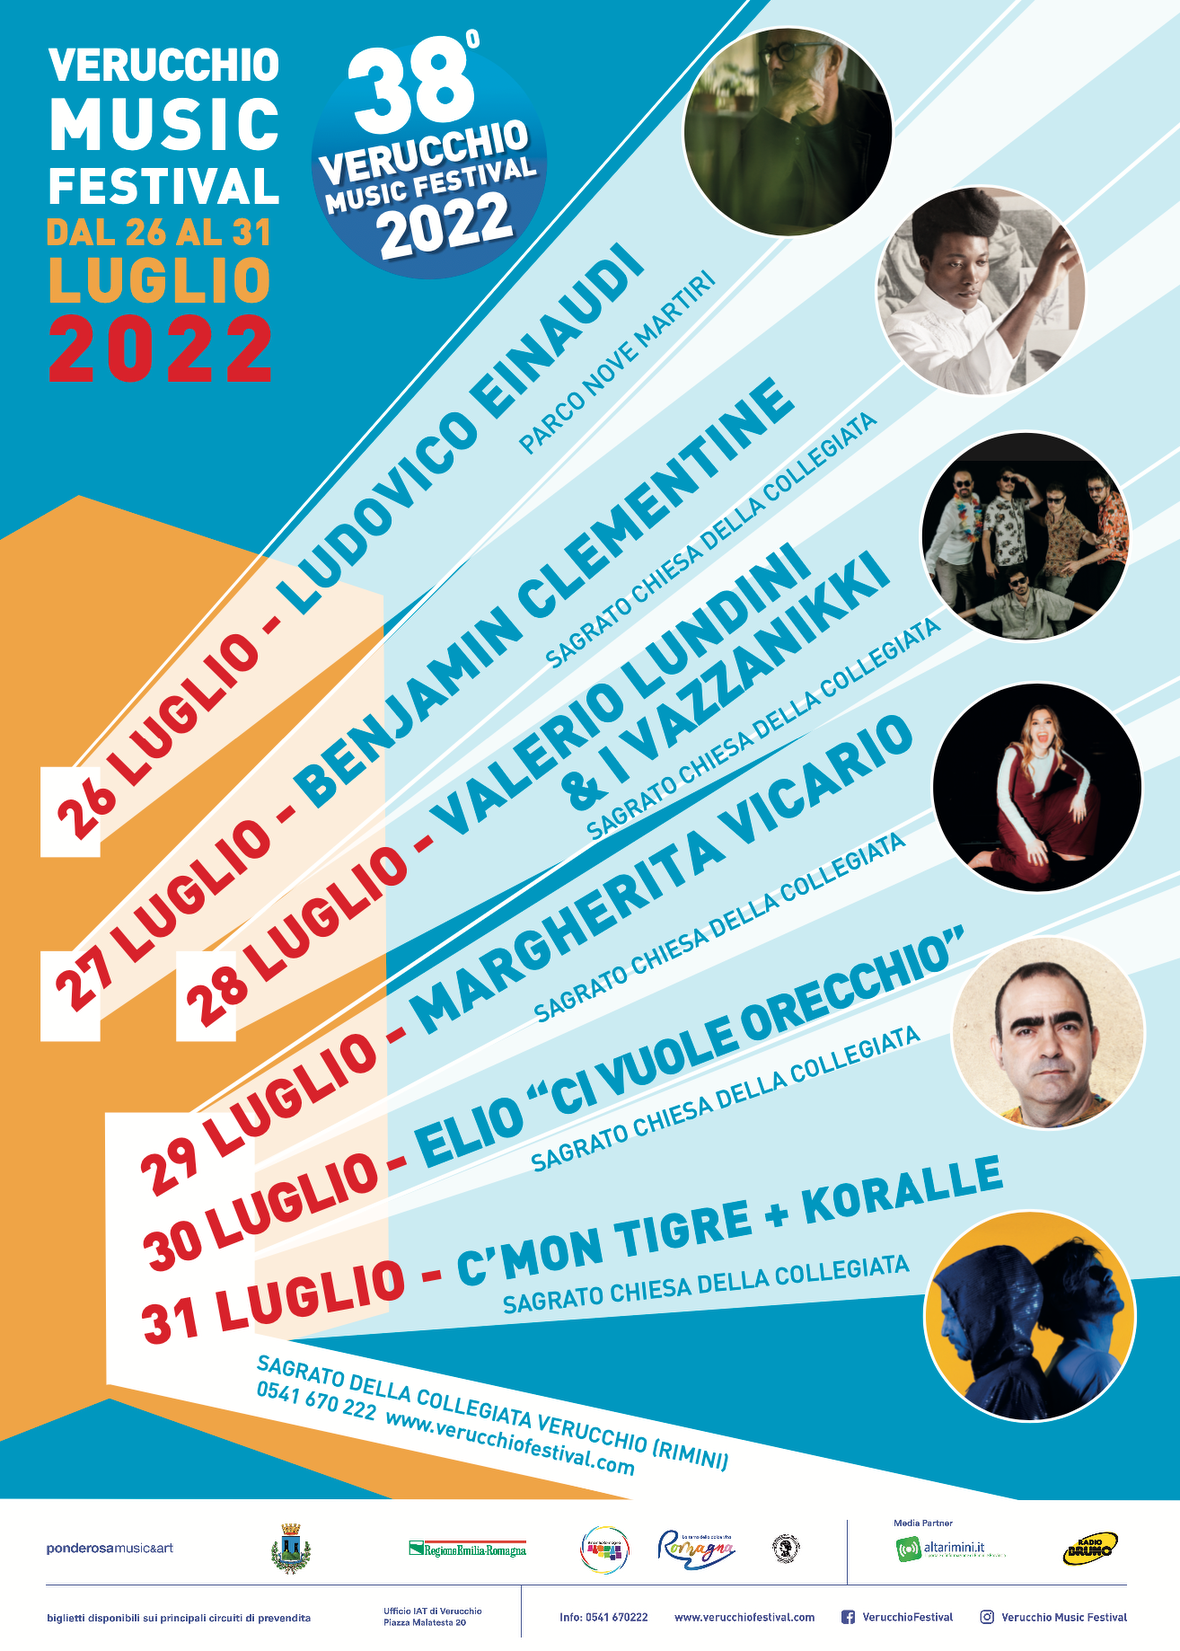 Al via da martedì 26 luglio l’edizione 2022 del Verucchio Music Festival